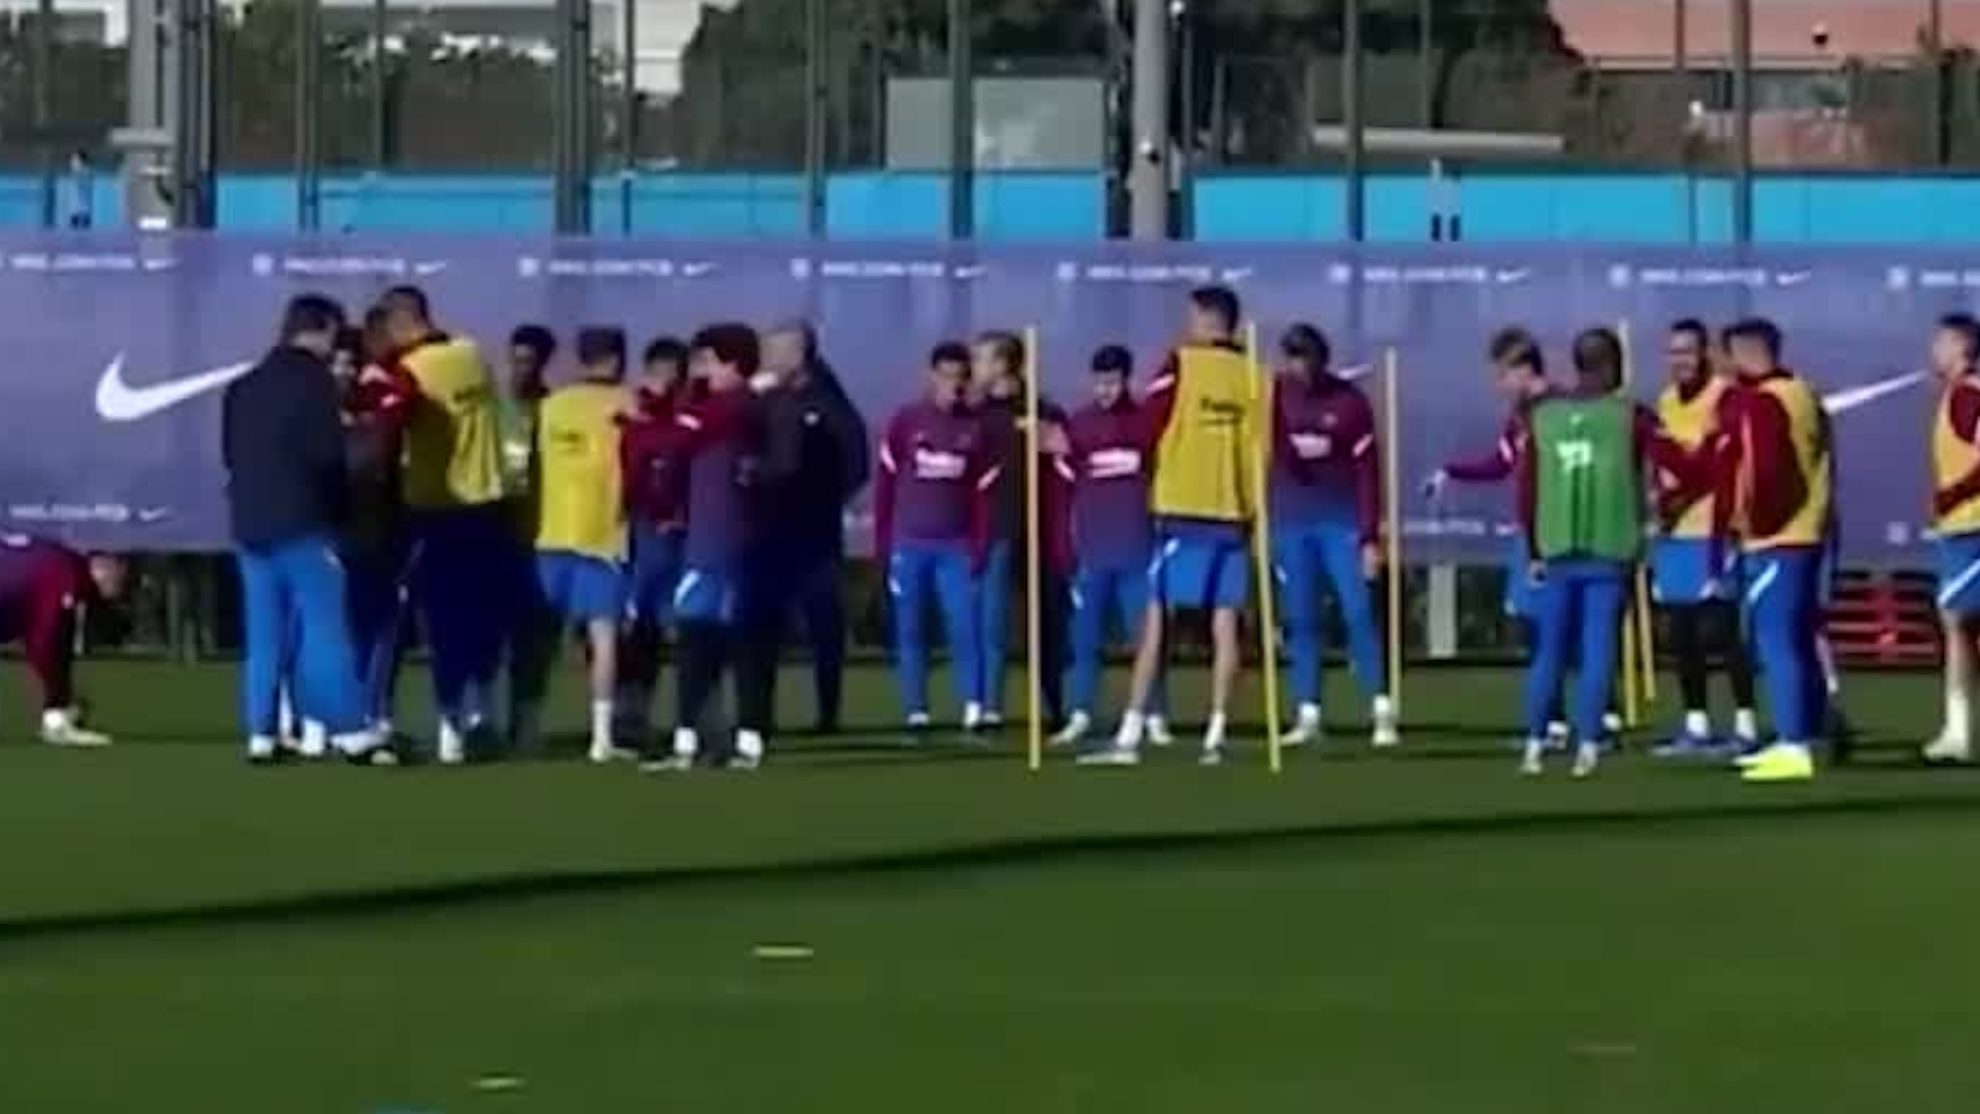 Reina el gran ambiente en el Barça: Riqui Puig  'trollea' a Xavi Hernández por llegar tarde a entrenar